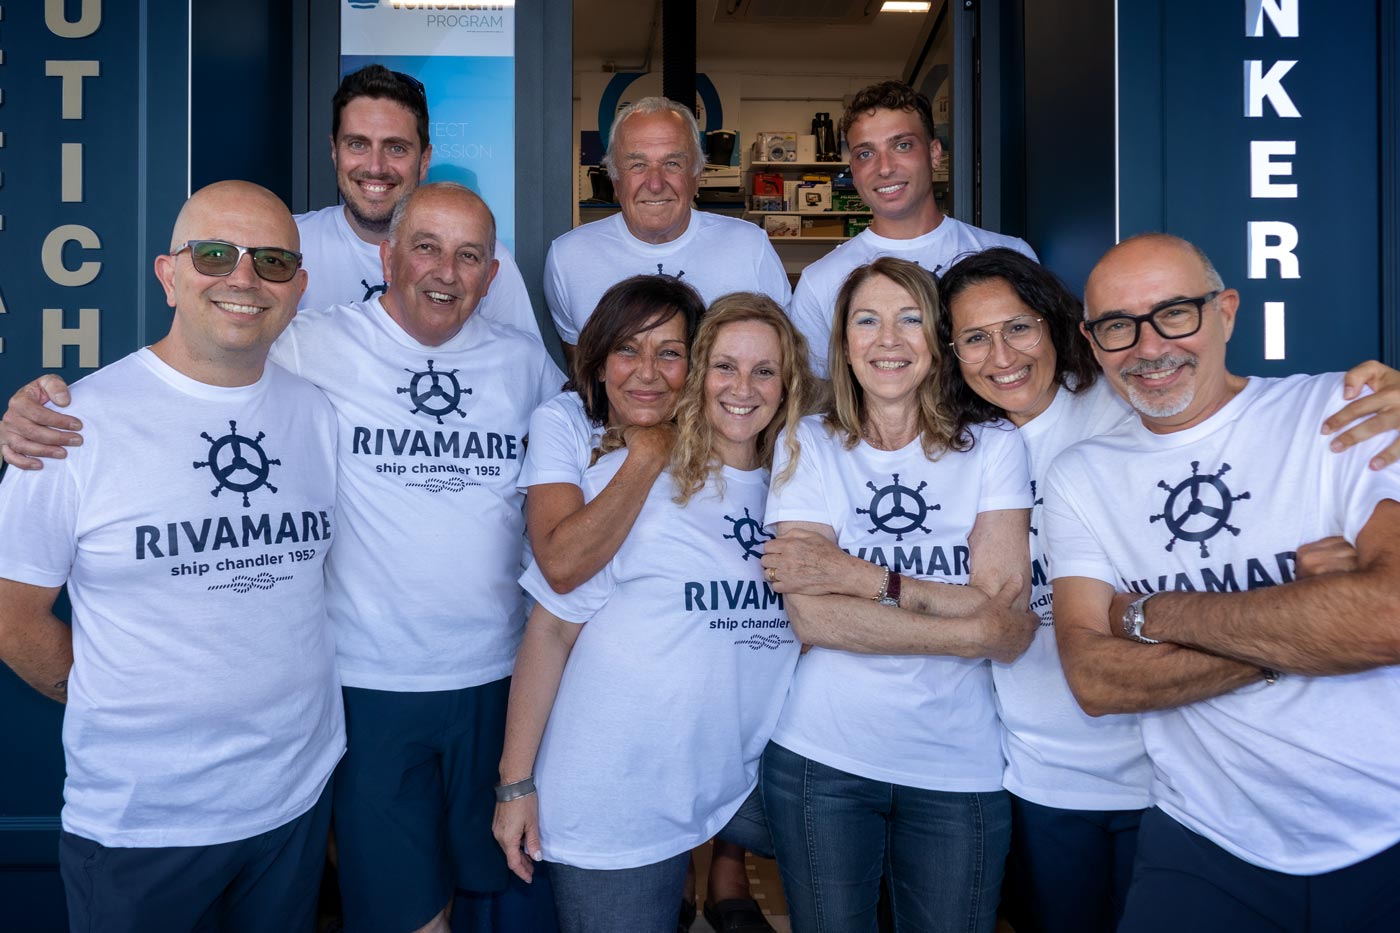 Team Rivamare attrezzature nautiche